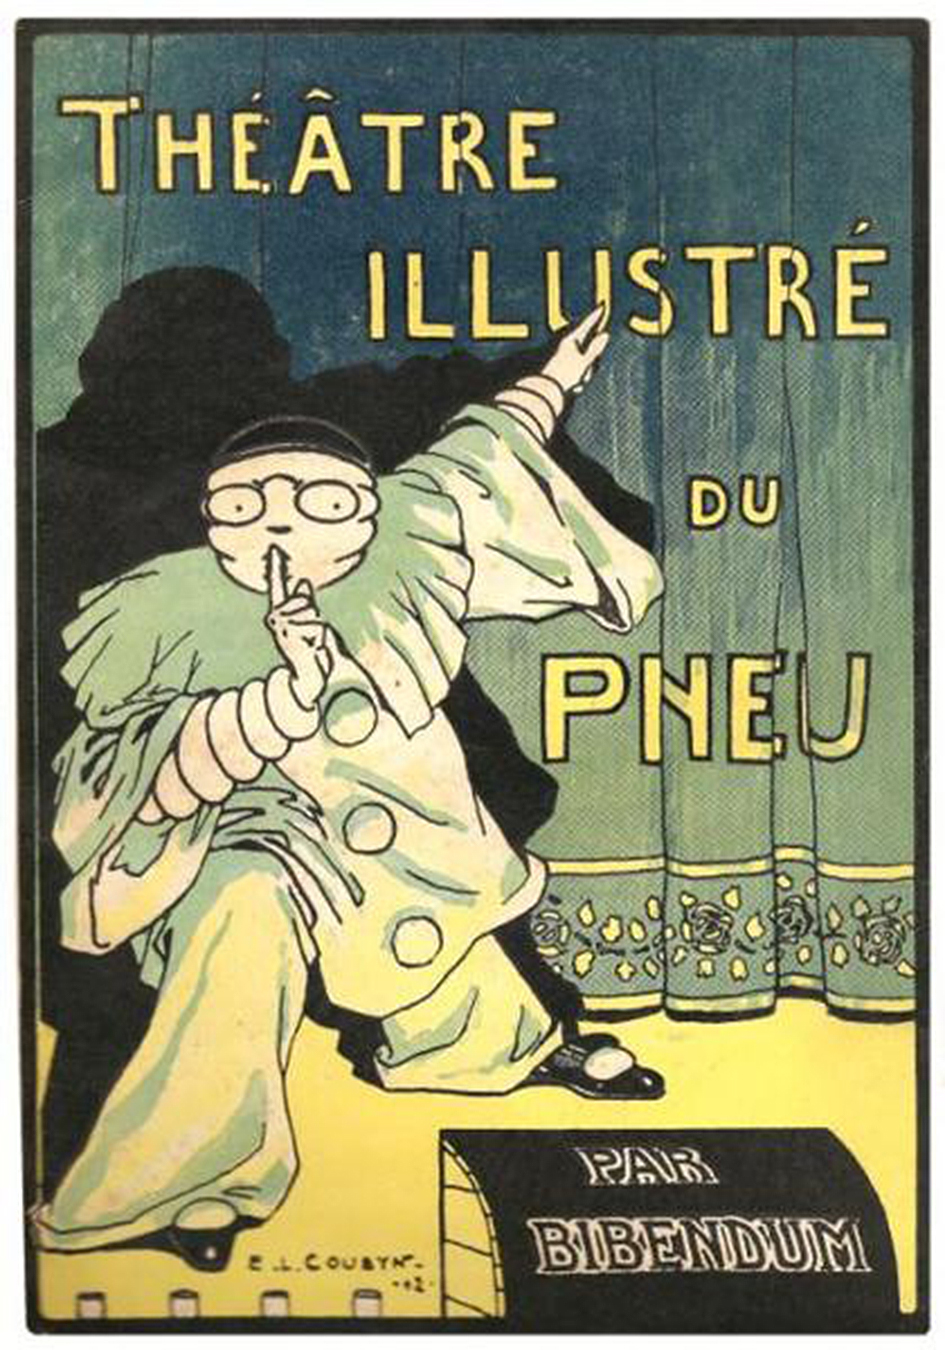 Publicité pour Michelin, vers 1900.